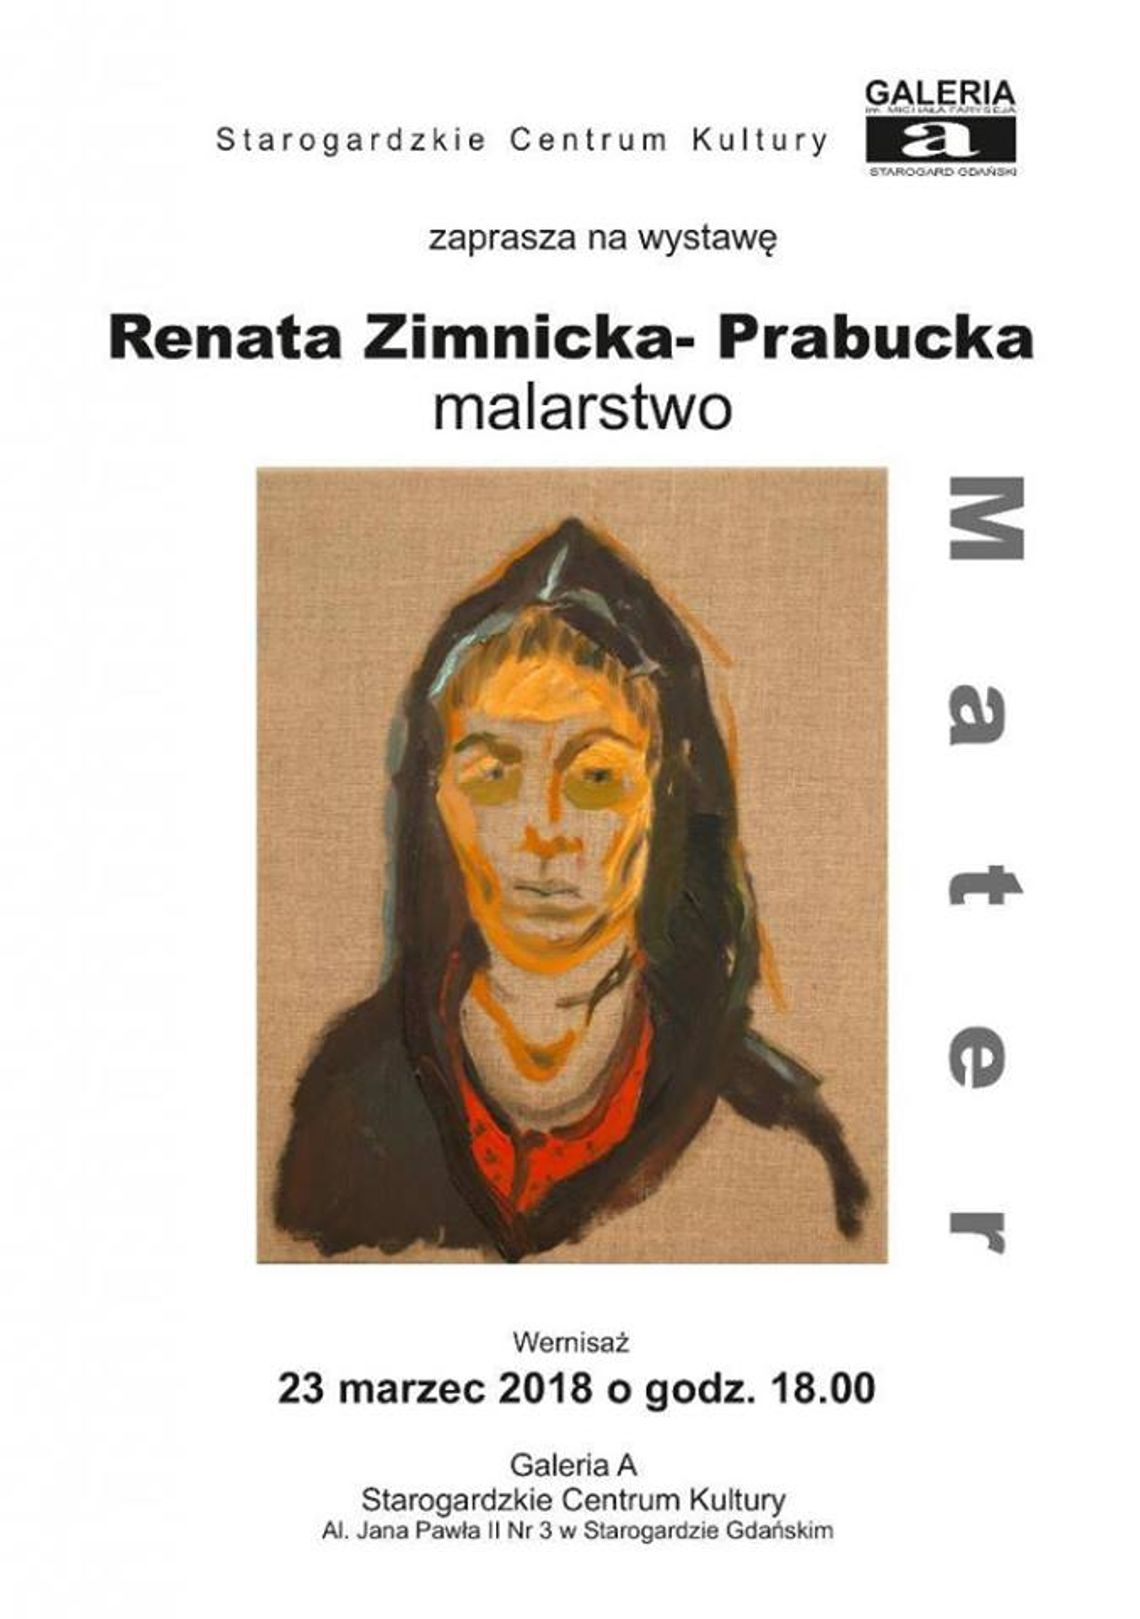 Wystawa "Mater" Renaty Zimnickiej-Prabuckiej